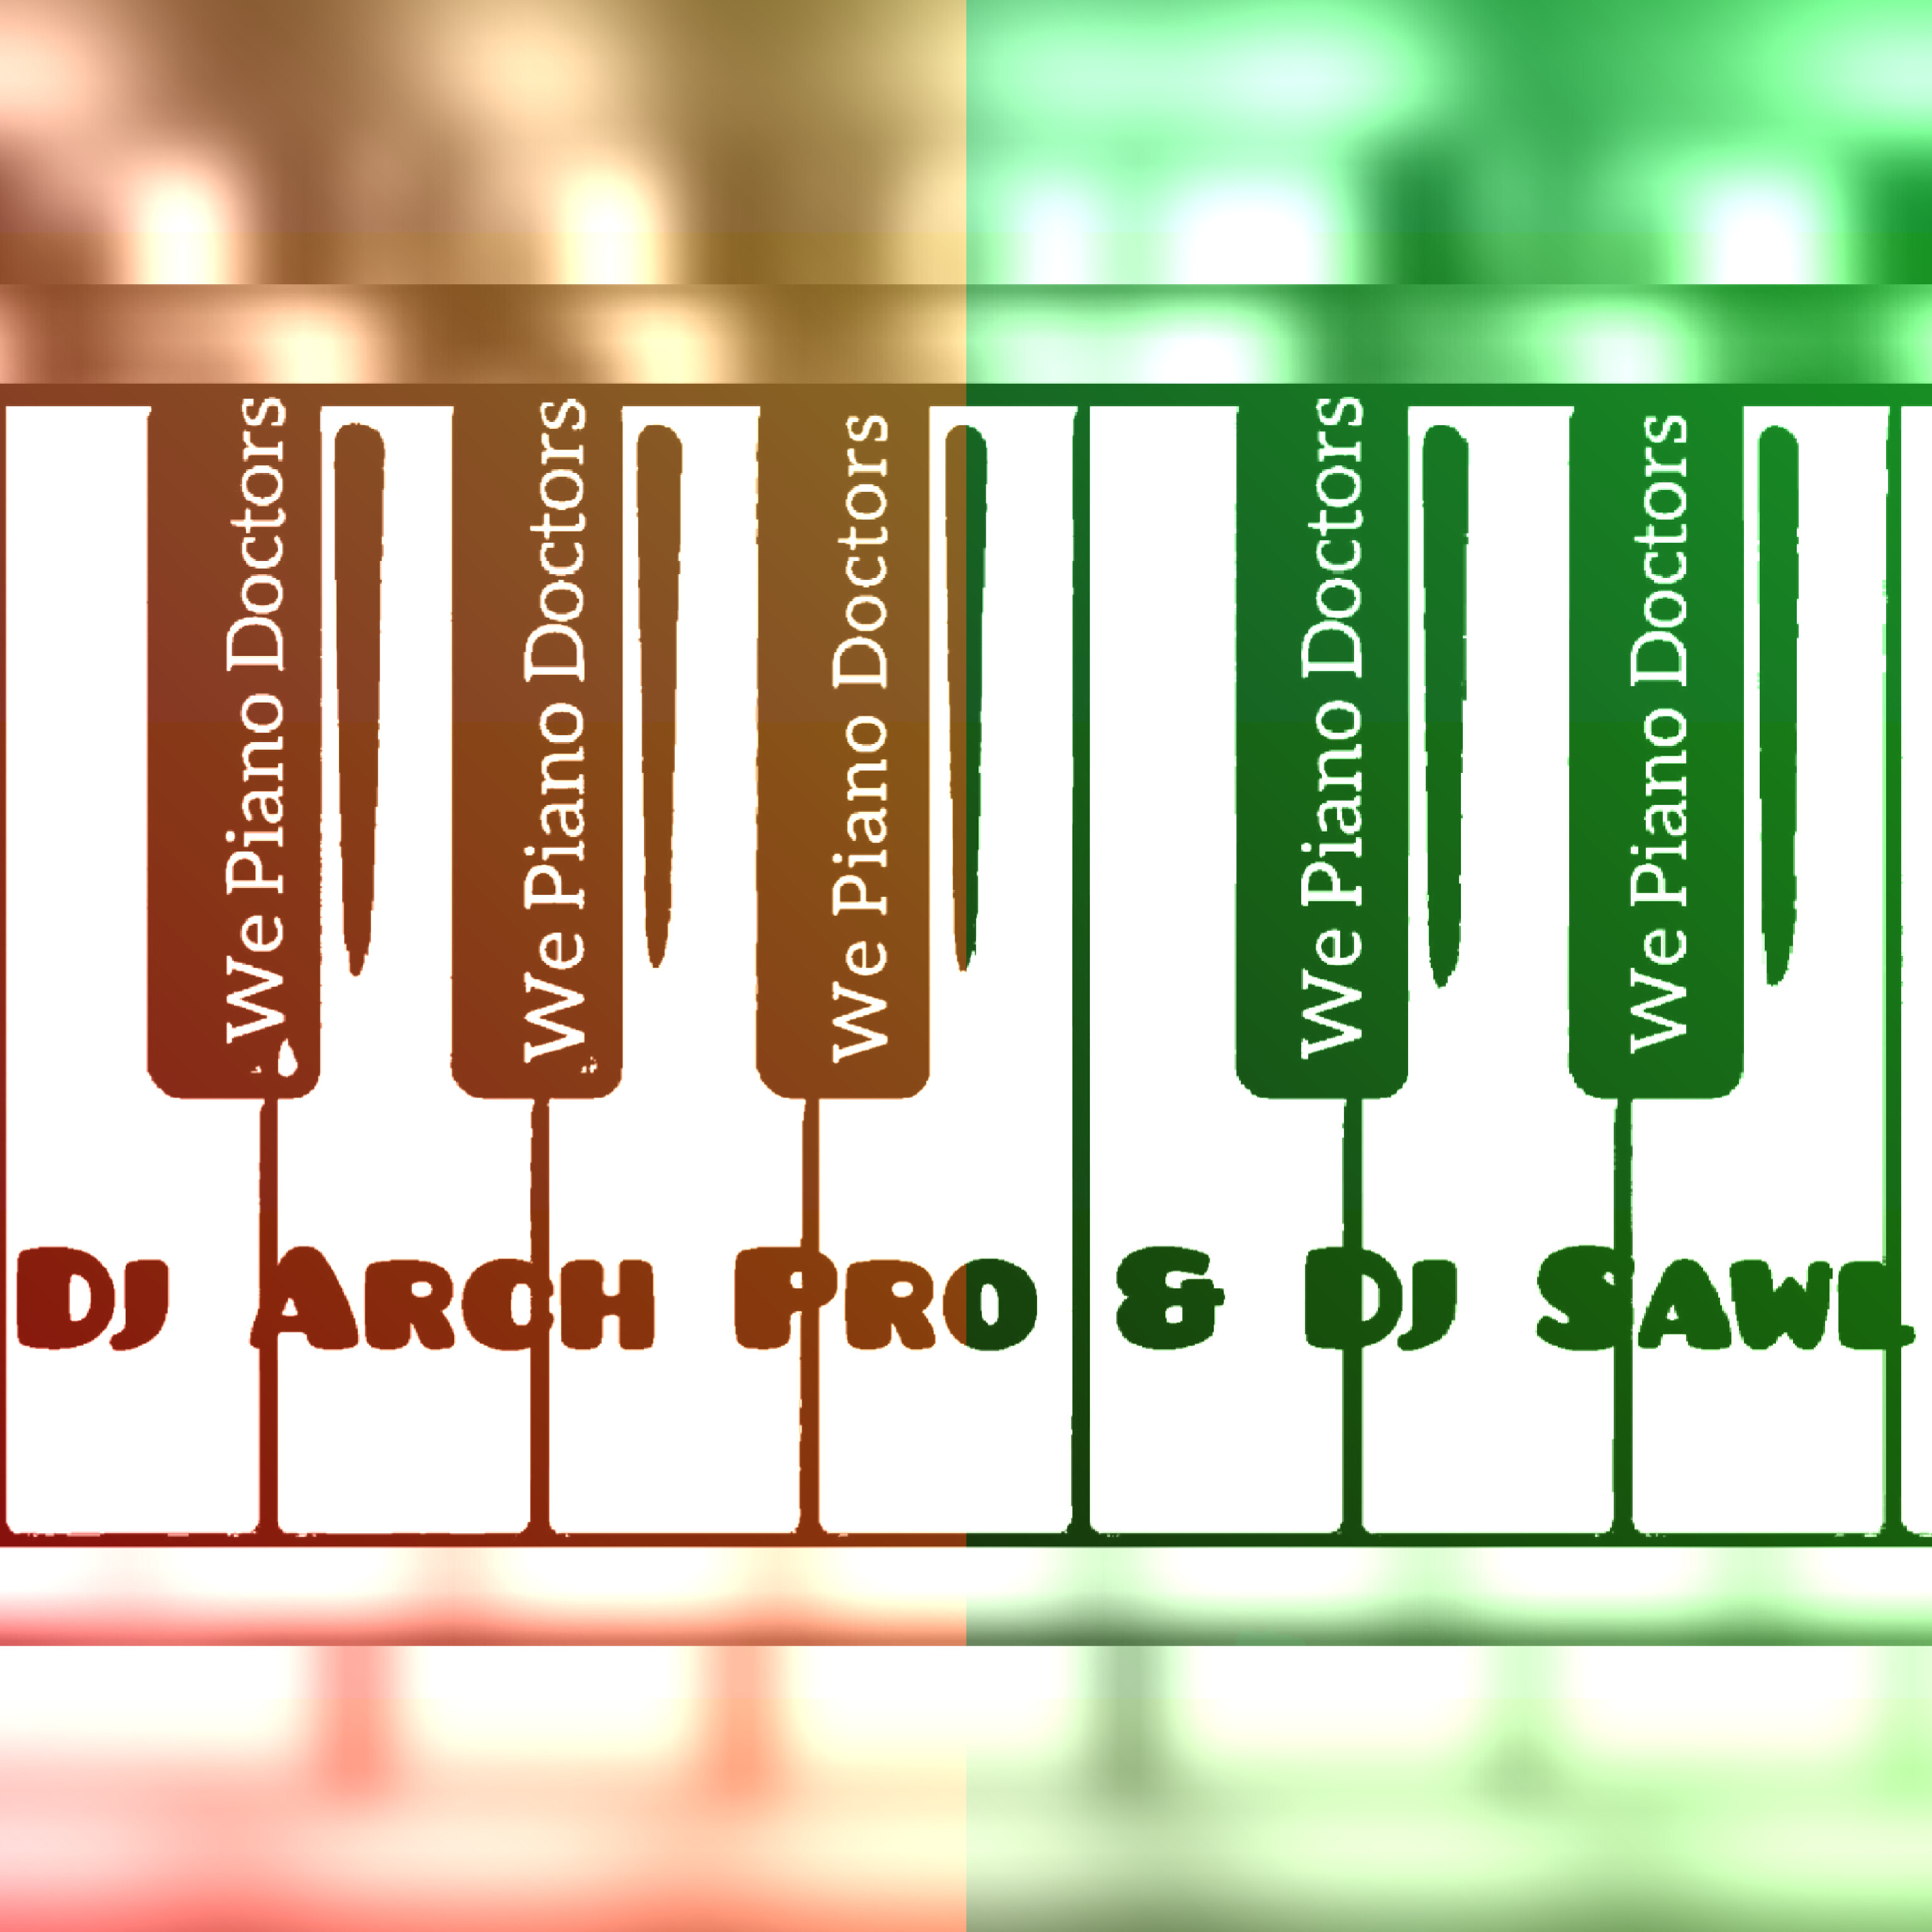 We Piano Doctorz - Dj Arch Pro & Dj Sawl